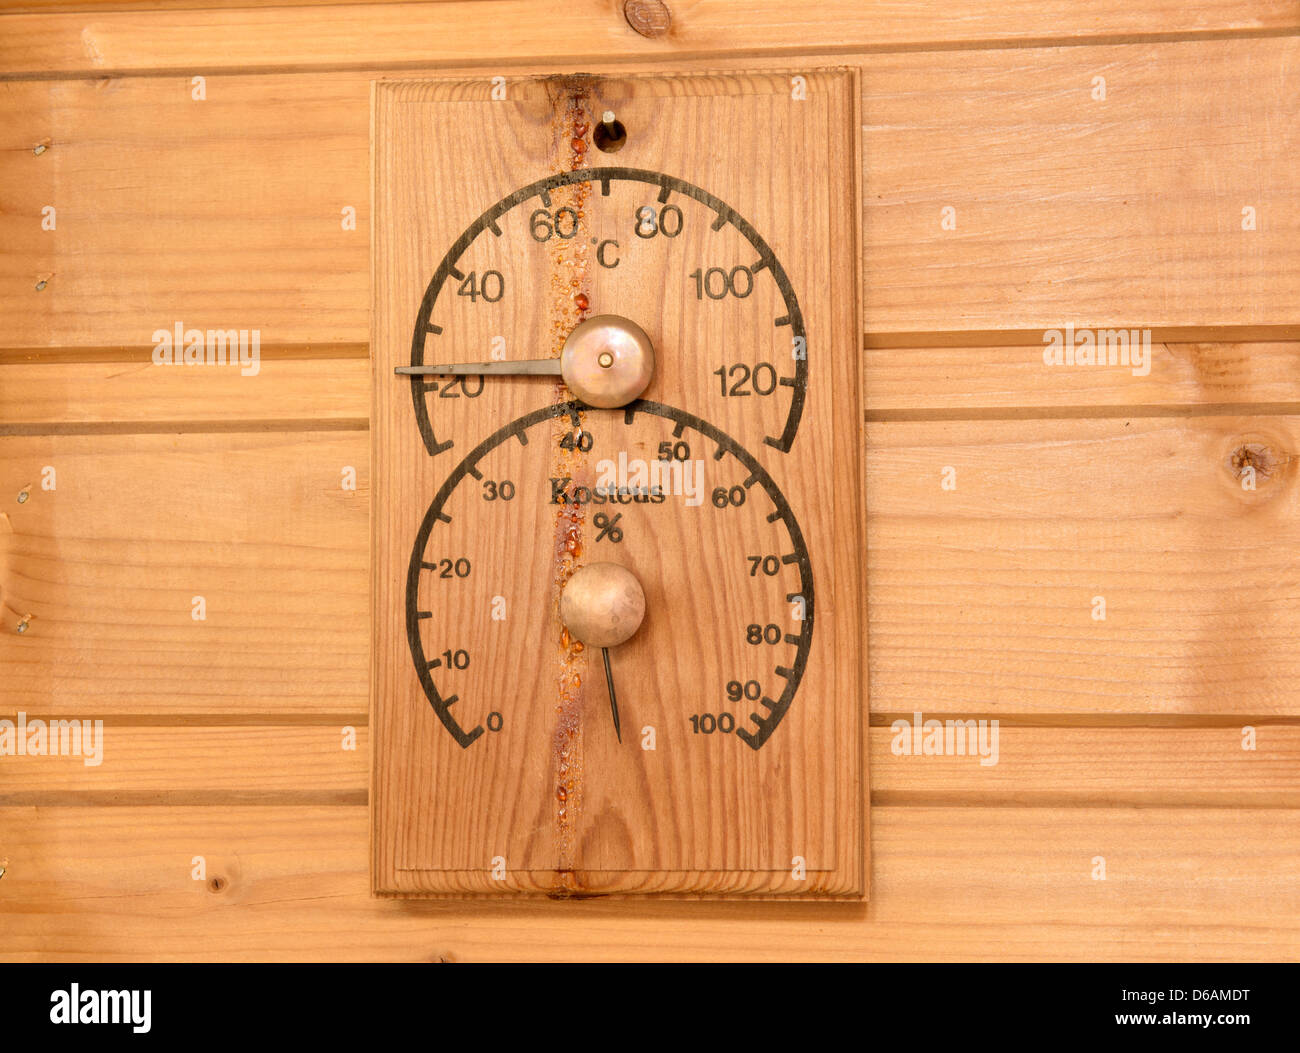 Das Thermometer und die Feuchtigkeit Messgerät in der finnischen sauna Stockfoto